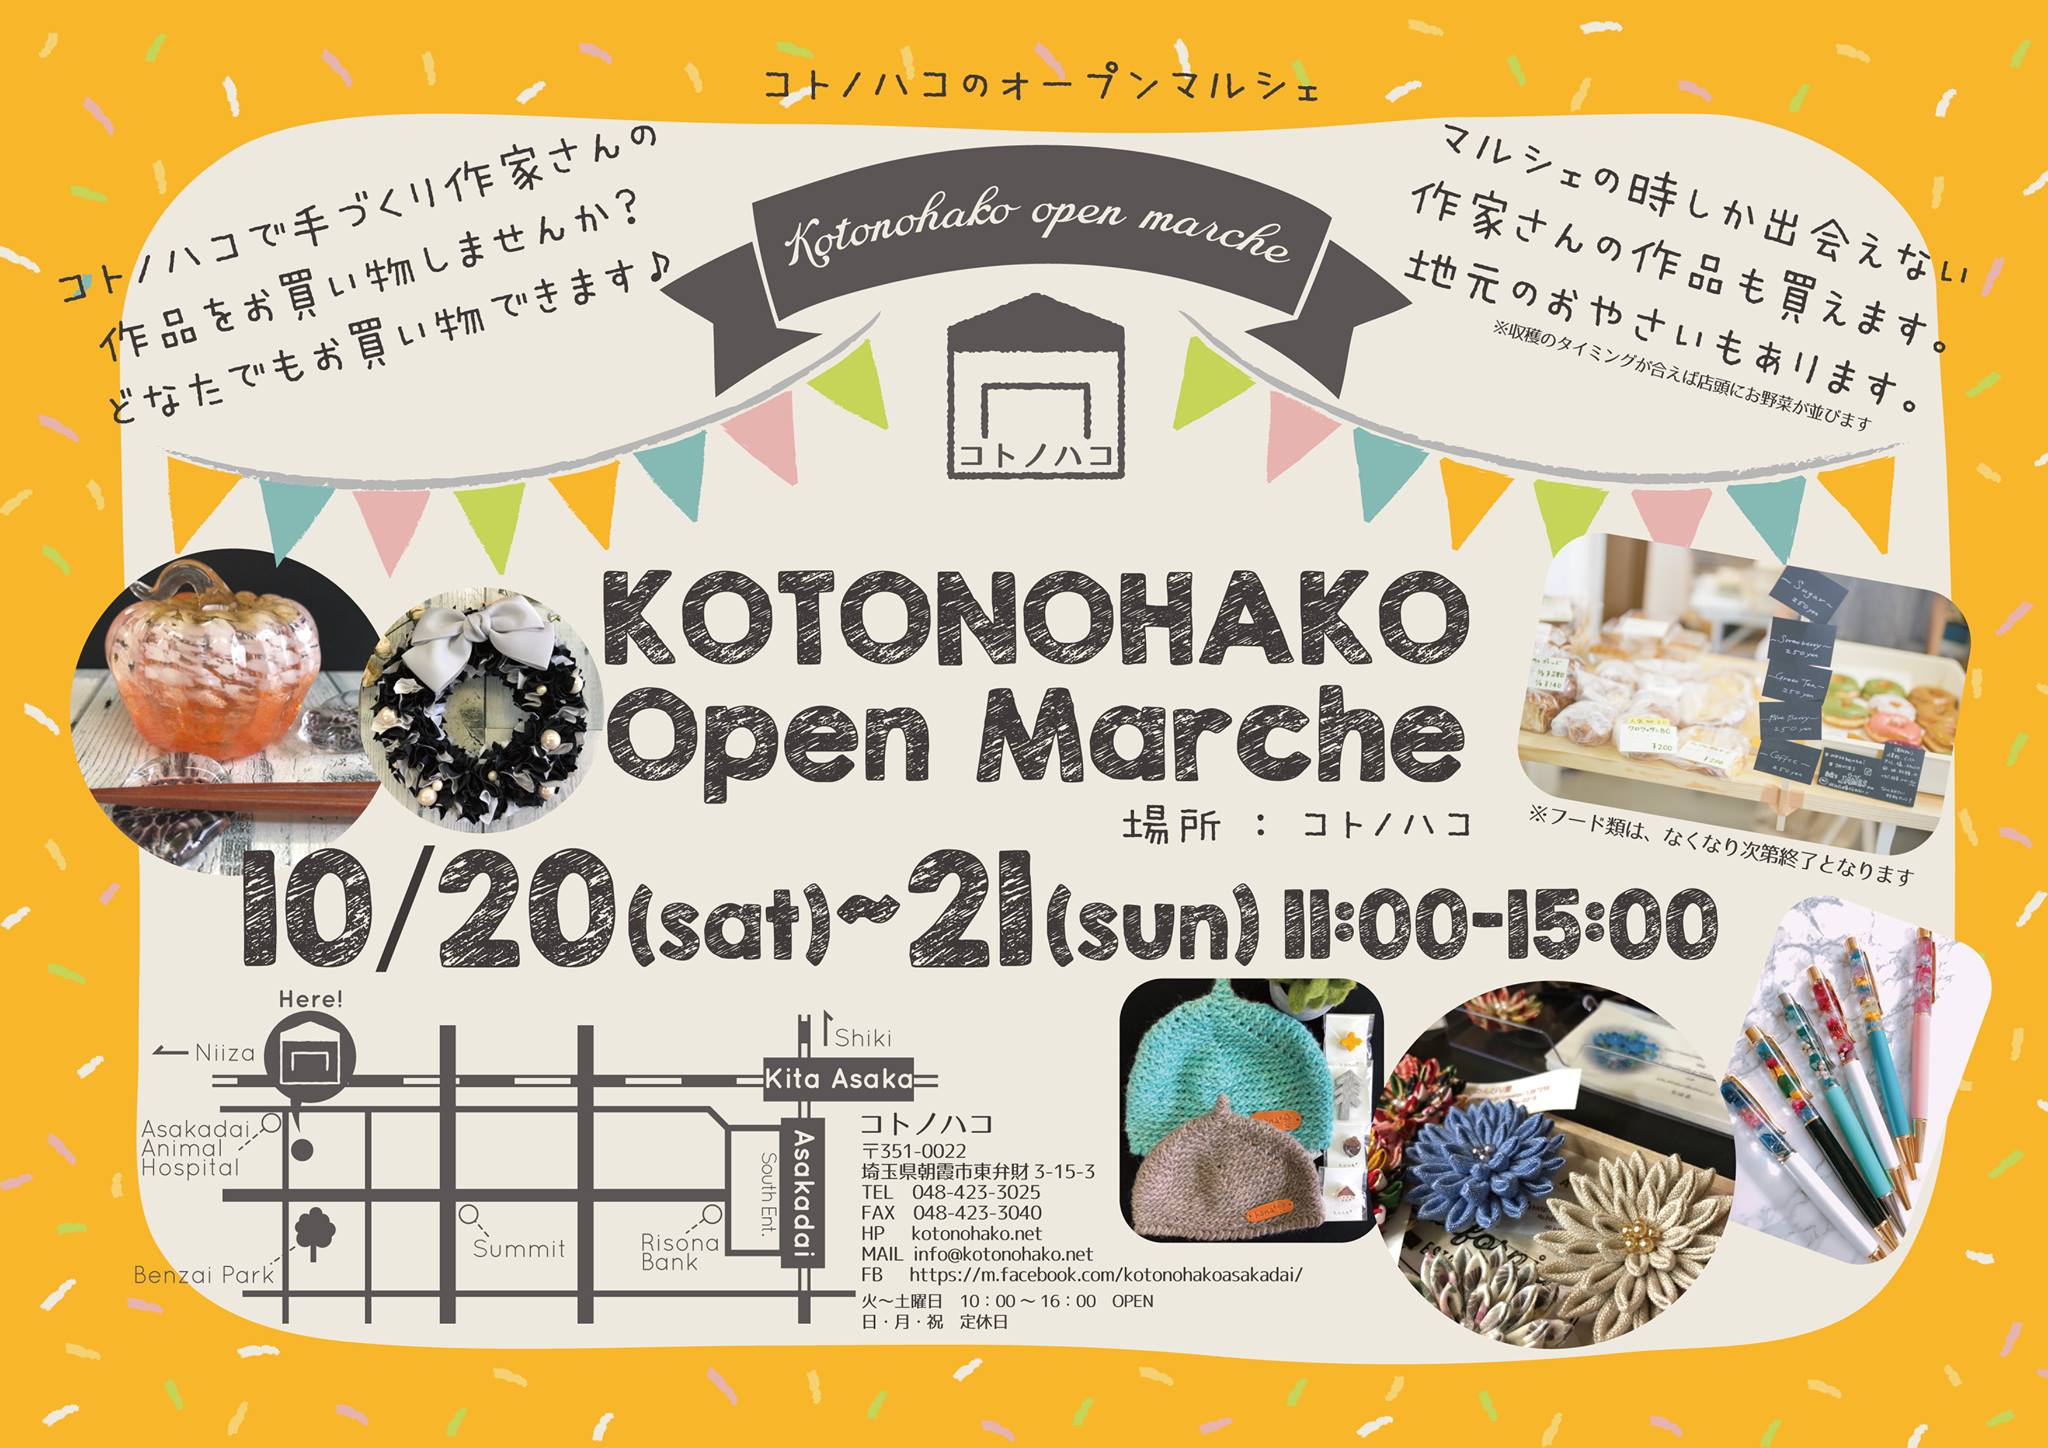 イベント【１０月のコトノハコオープンマルシェ】